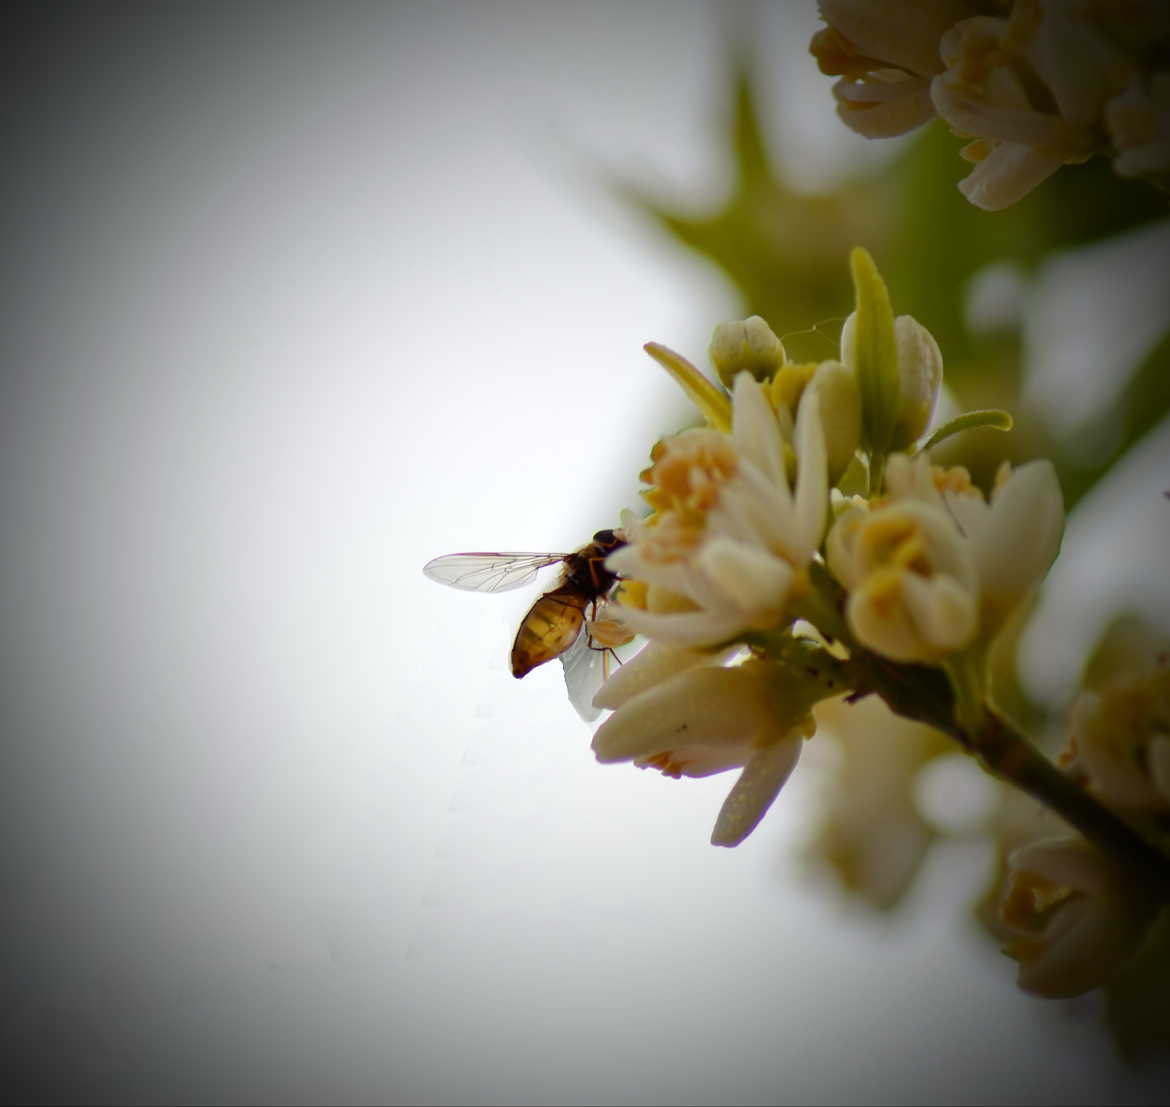 Ce matin, je butine... 1ère macro d'une abeille si près.